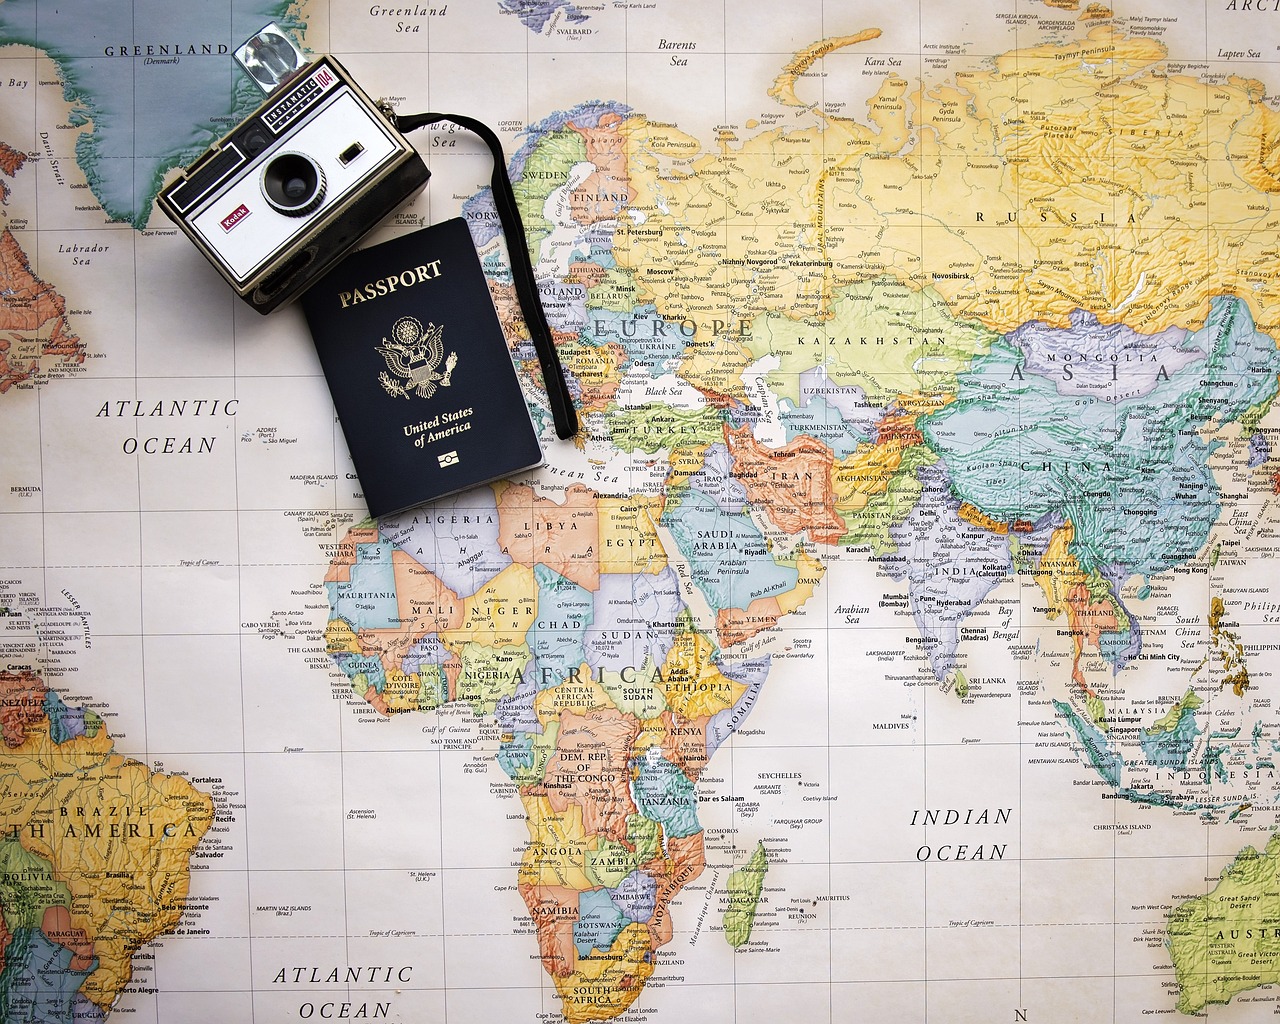 ¿Qué documentos se necesitan para tramitar un pasaporte?